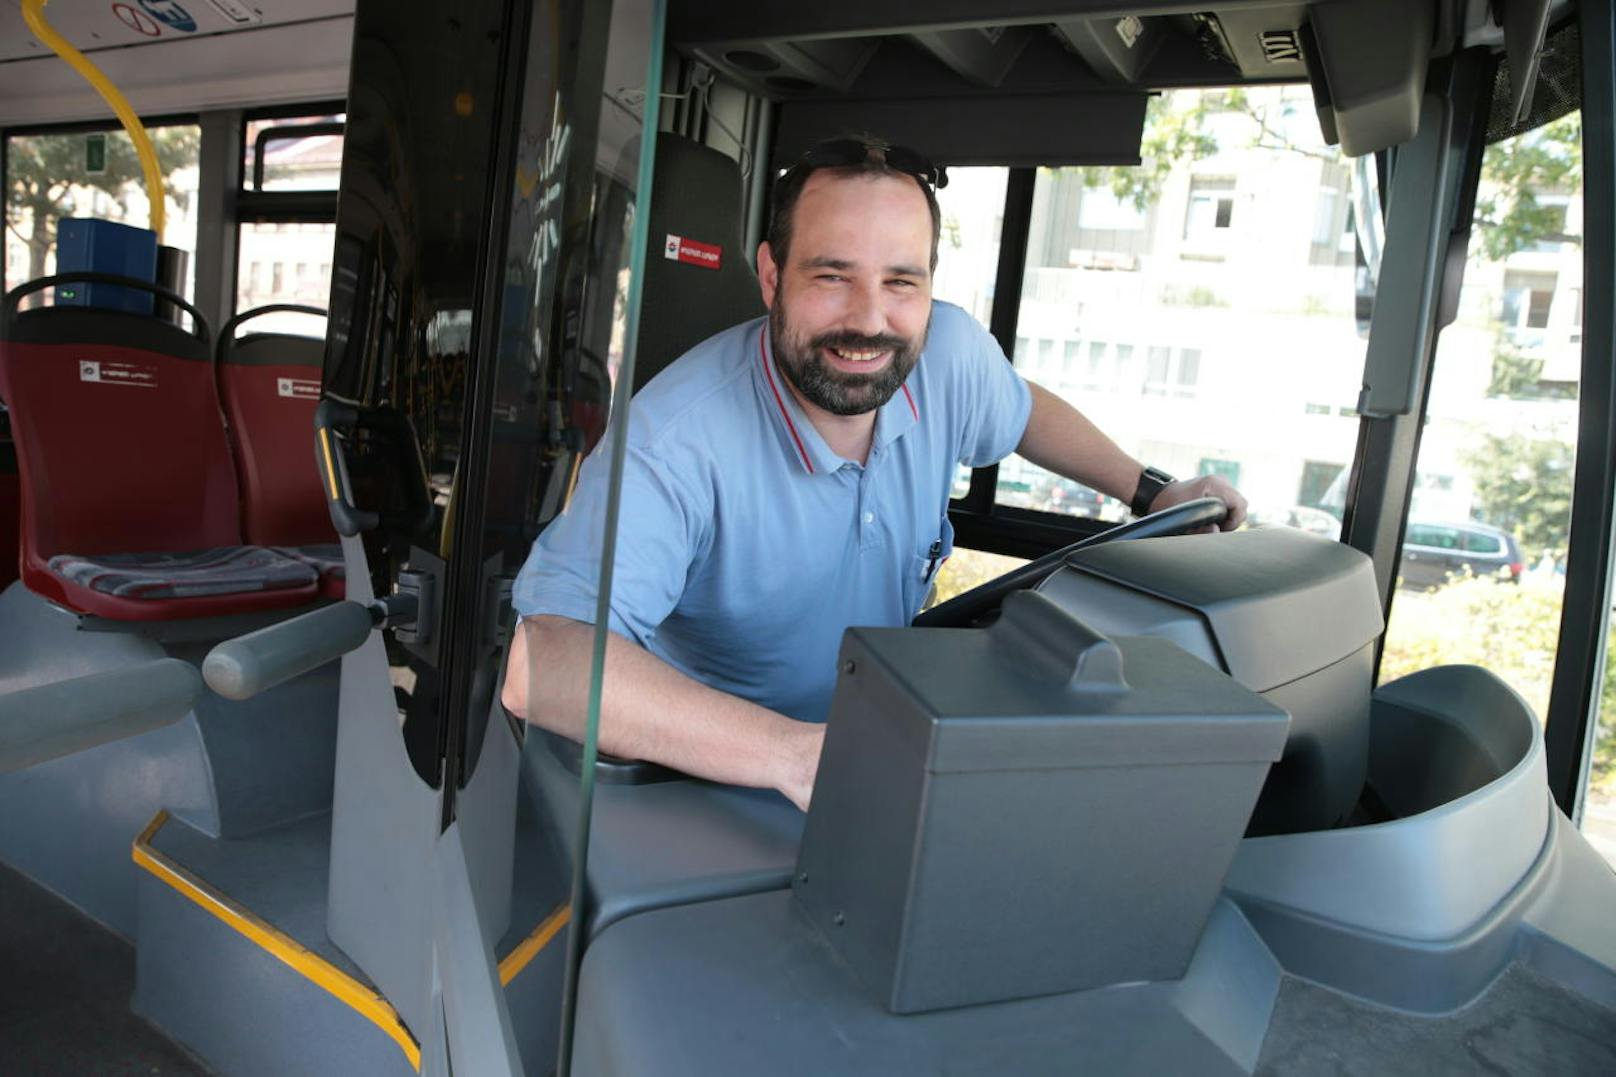 Busfahrer Olivier zaubert seinen Fahrgästen jeden Tag ein Lächeln ins Gesicht. Eine Leserin bedankt sich nun mit einem offenen Brief bei ihm. "Heute" hat ihn getroffen.